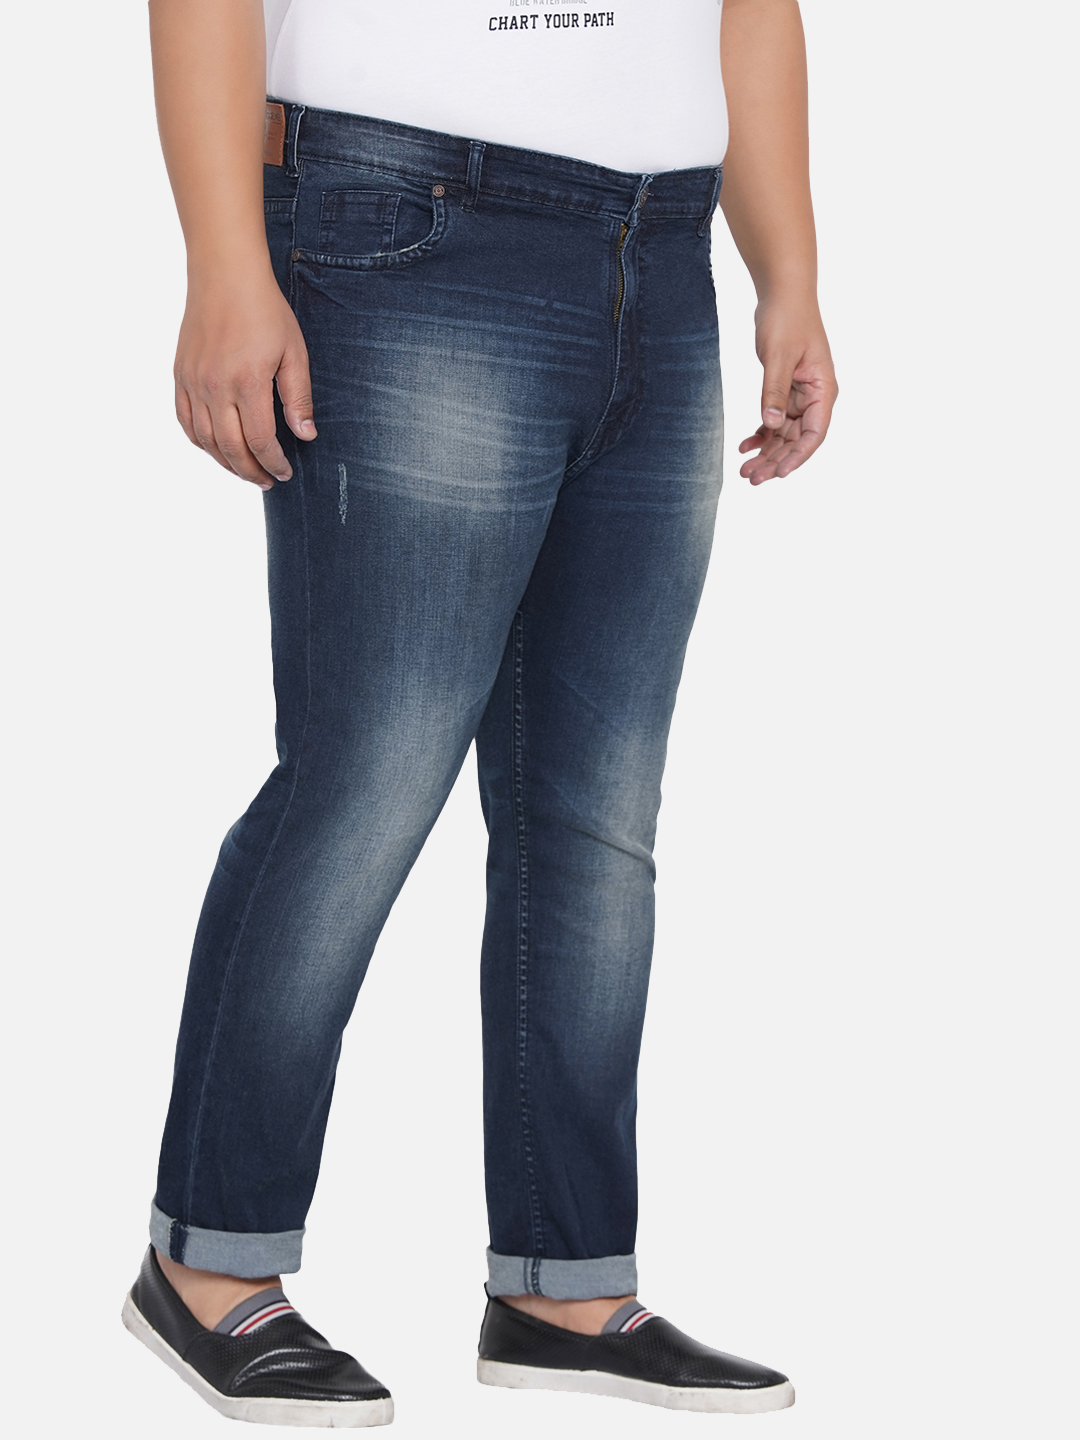 bottomwear/jeans/JPJ12205/jpj12205-3.jpg